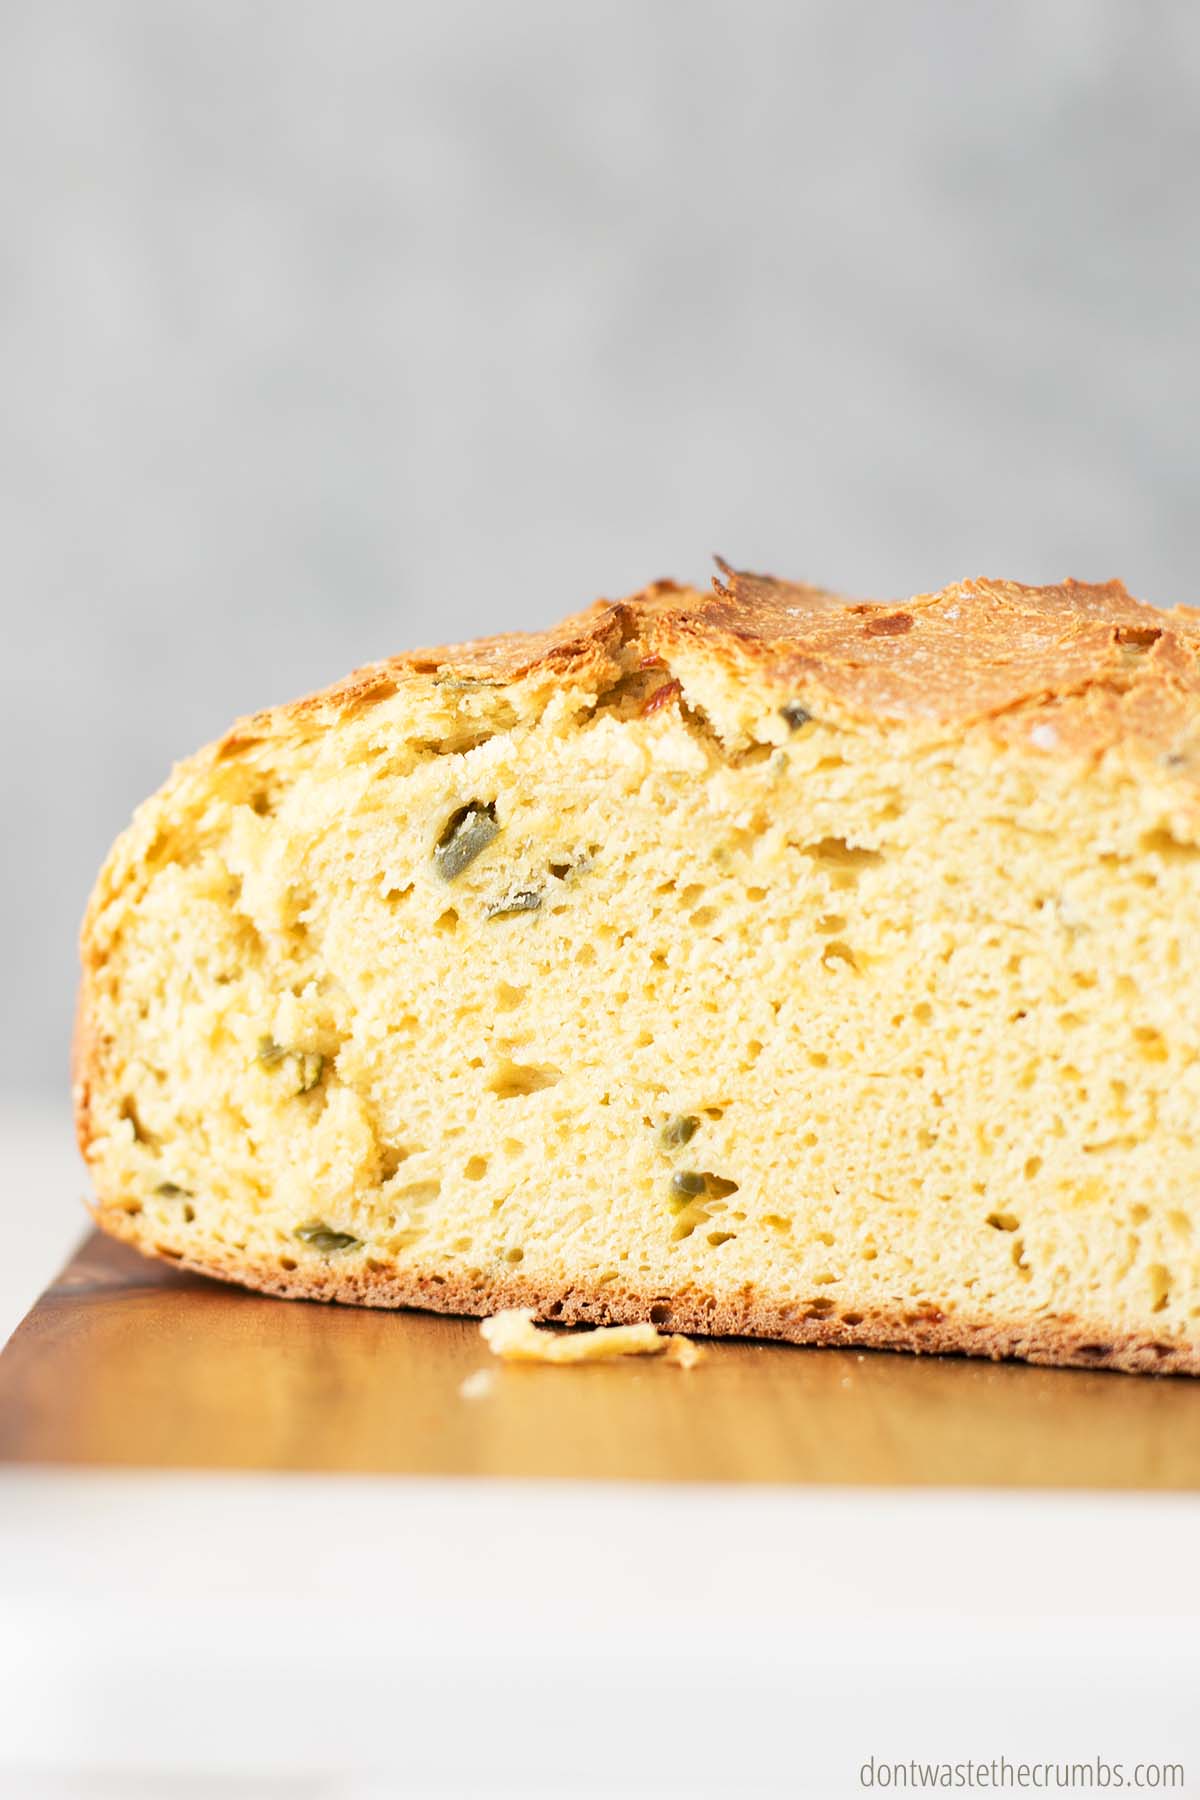 Side image of a sliced loaf of jalapeno cheddar bread.